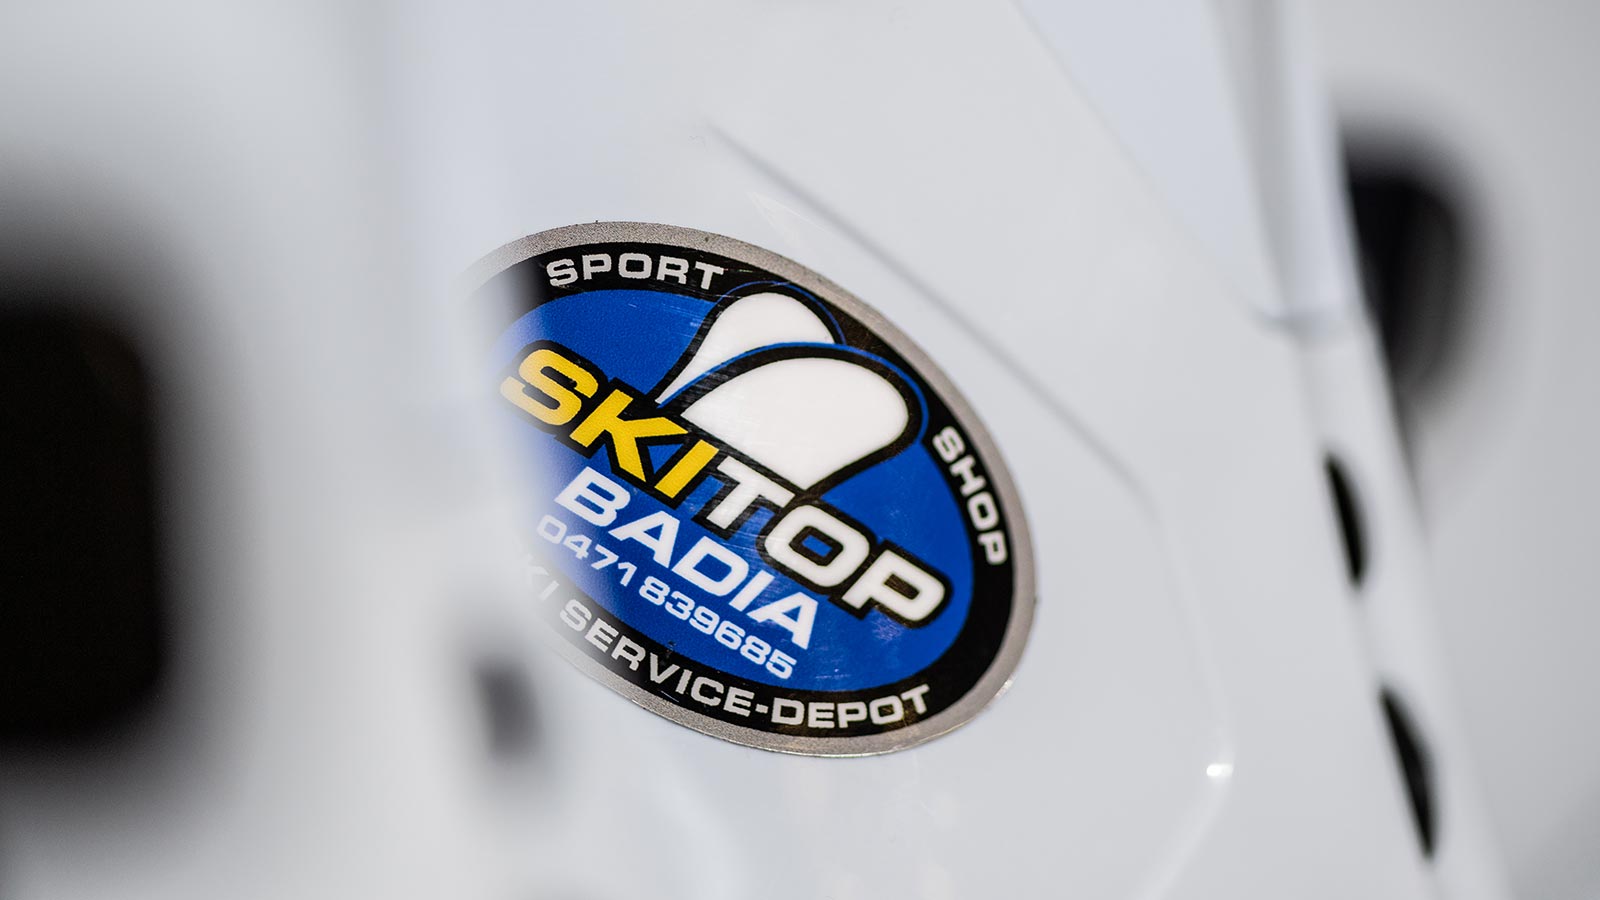 Dettaglio del logo della Ski Top Badia